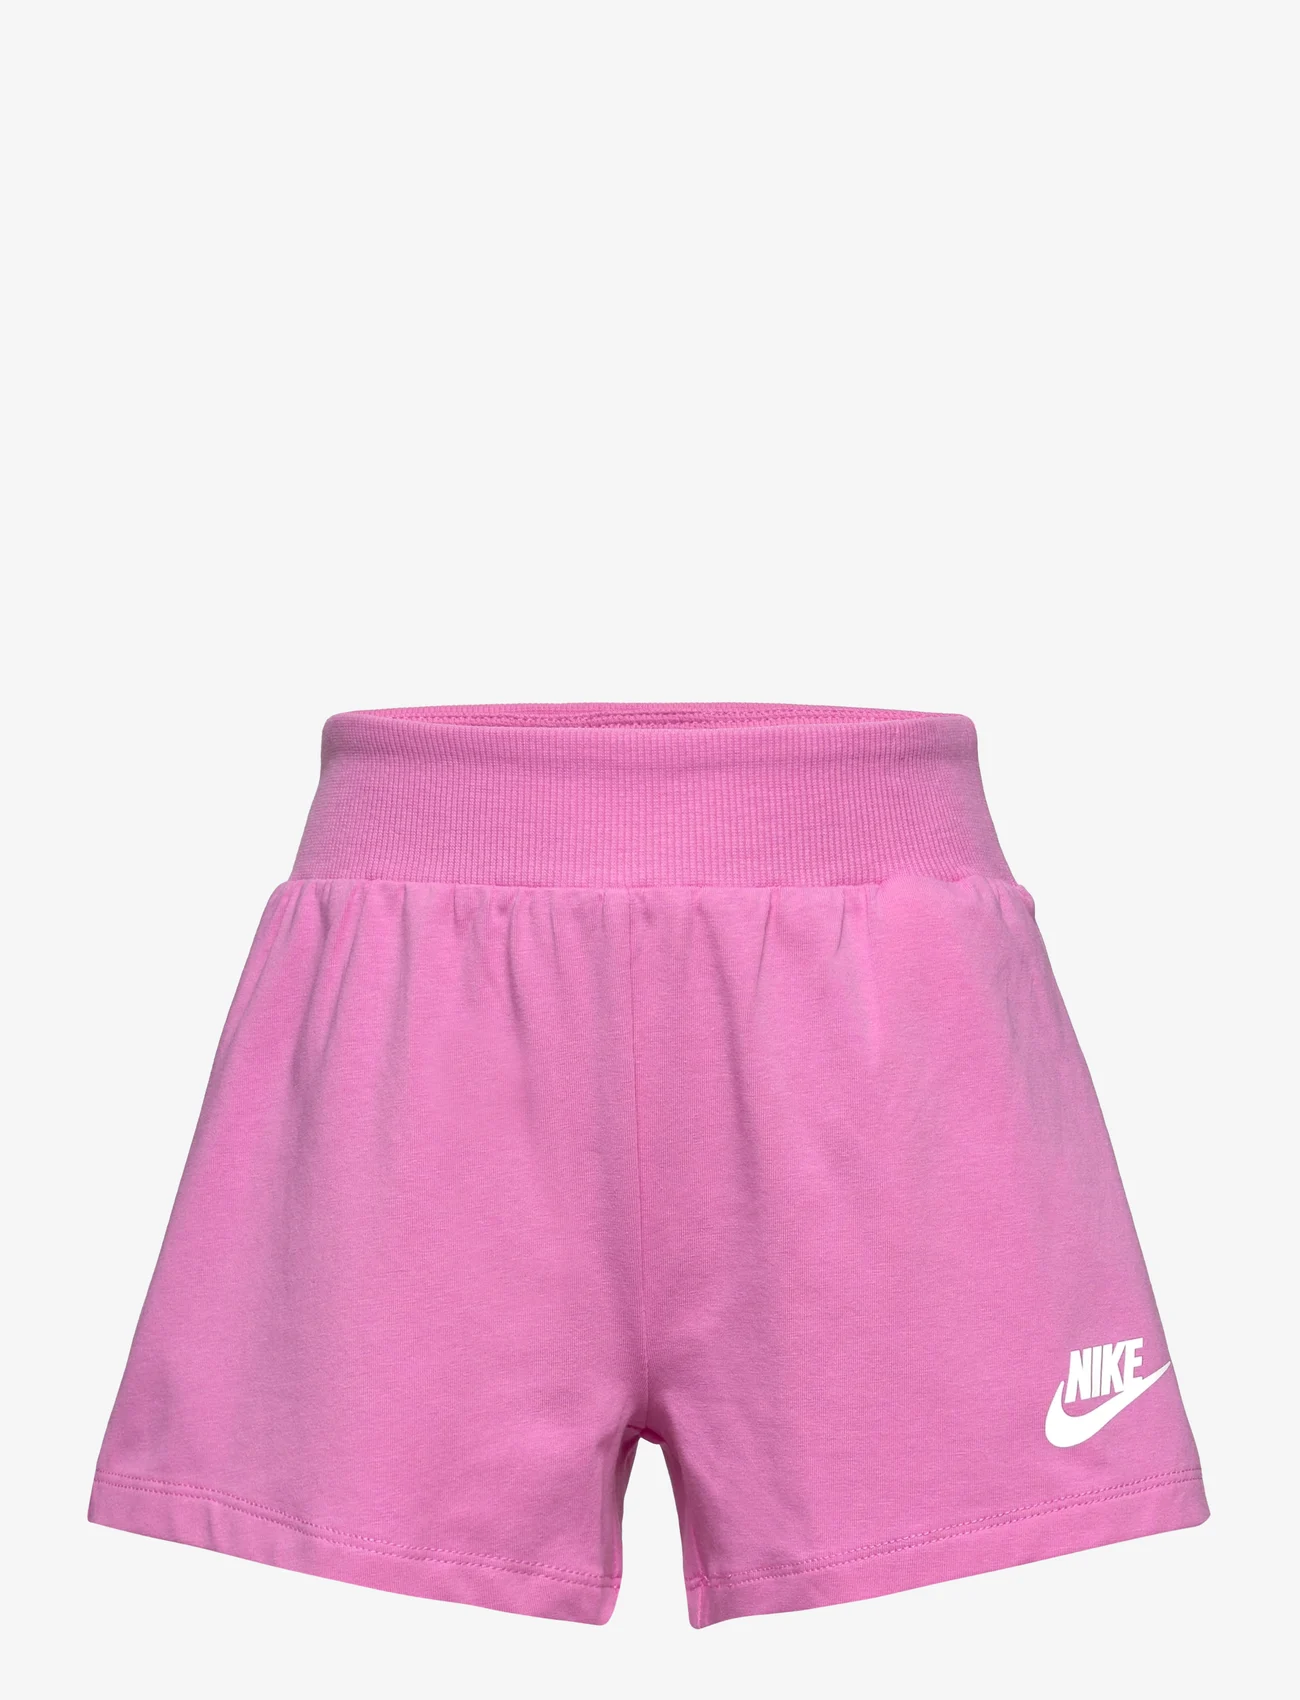 Nike - NKG JERSEY SHORT / NKG JERSEY SHORT - sweat shorts - playful pink - 0